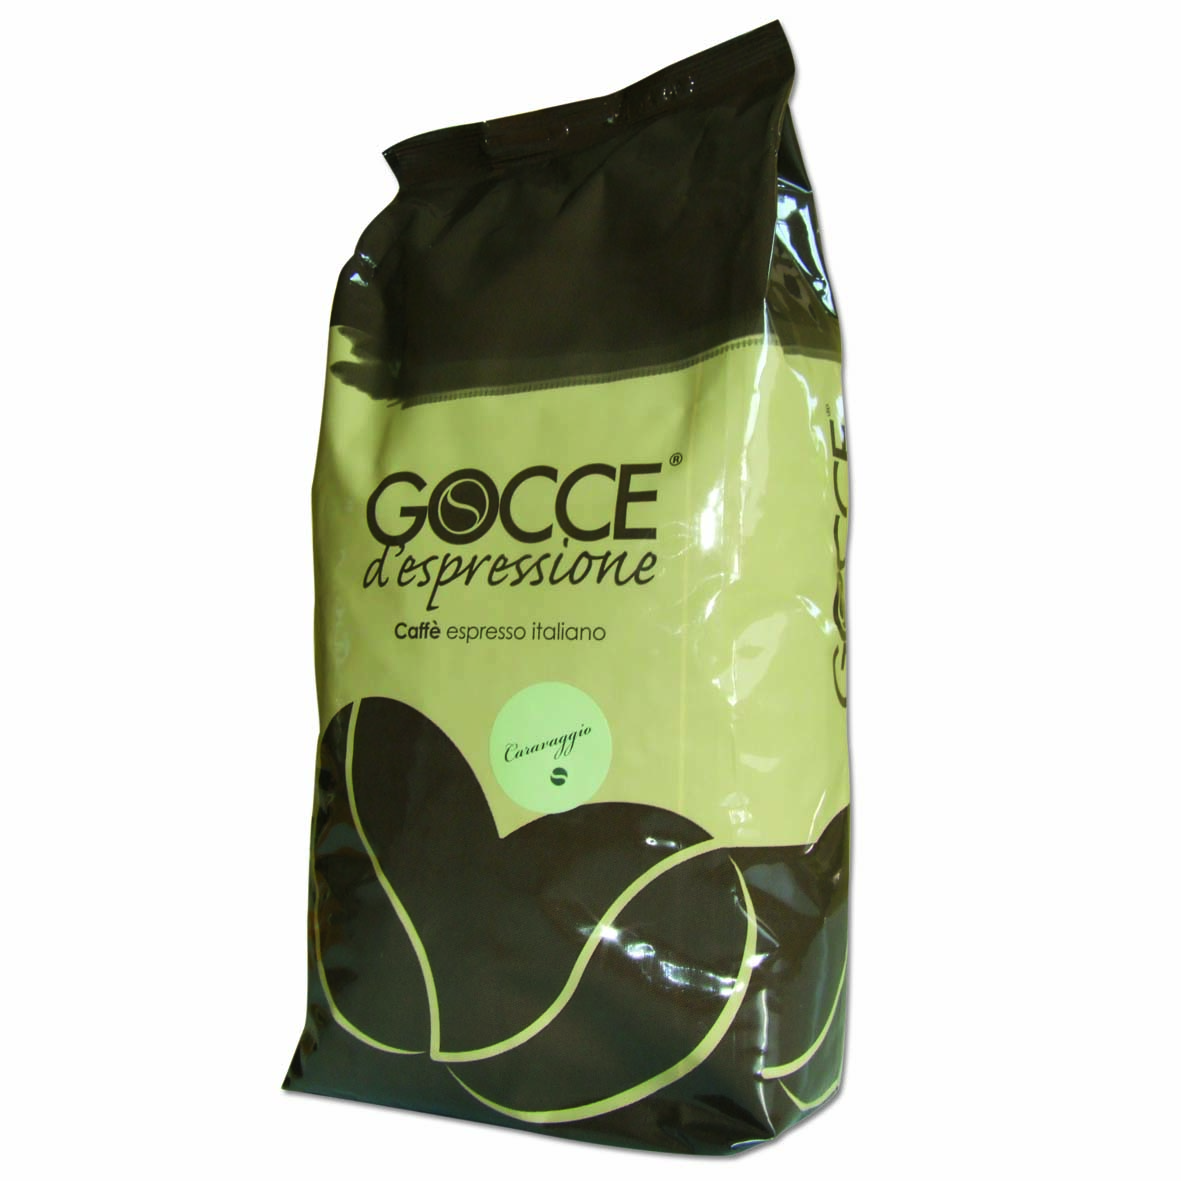 Roasted Coffee Gocce Espressione